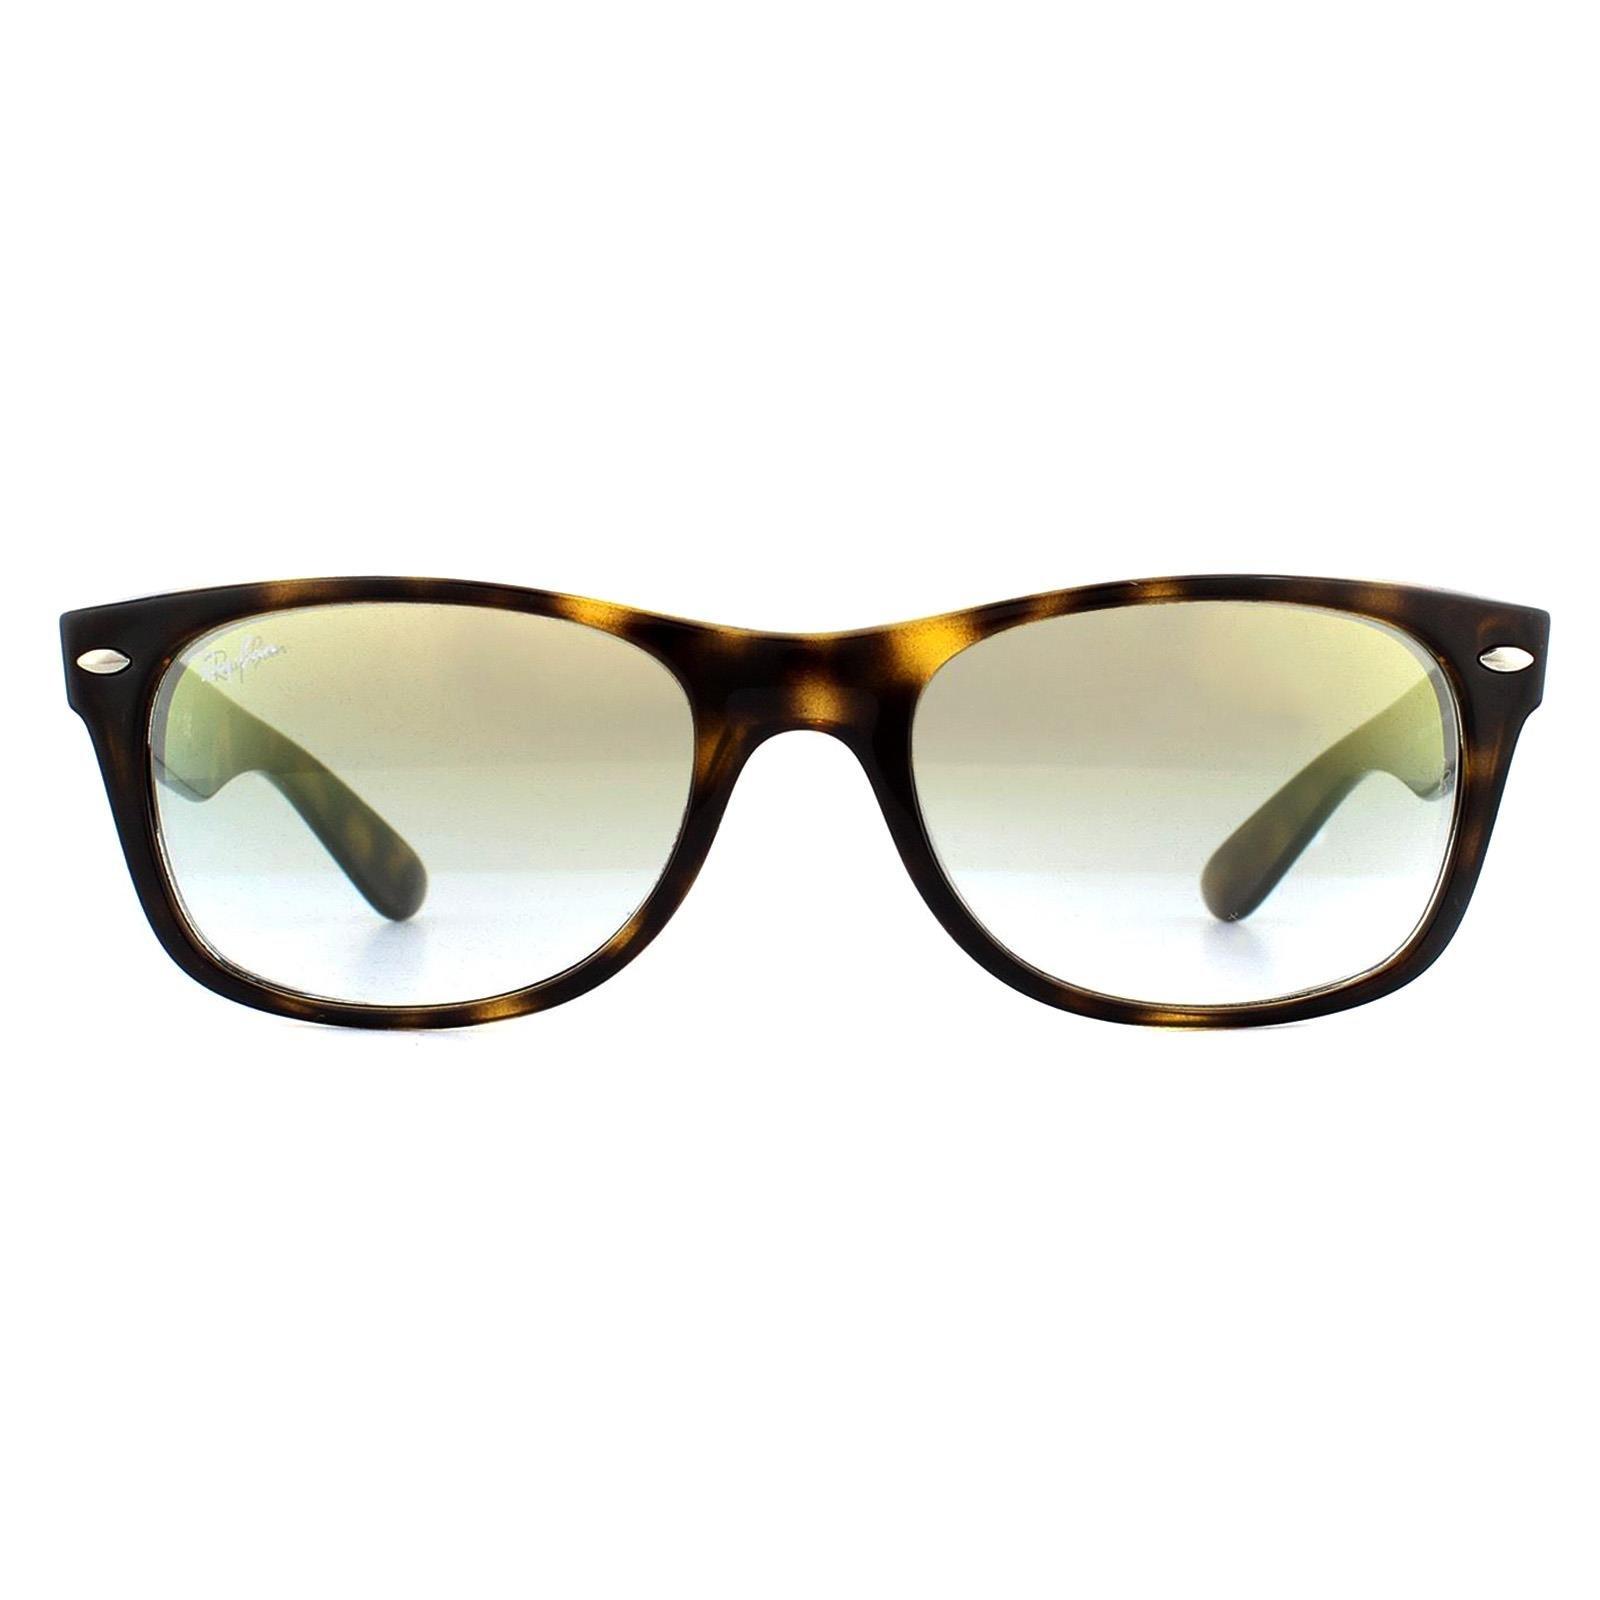 Прямоугольные черепаховые солнцезащитные очки с градиентом и золотистыми вспышками Ray-Ban, коричневый